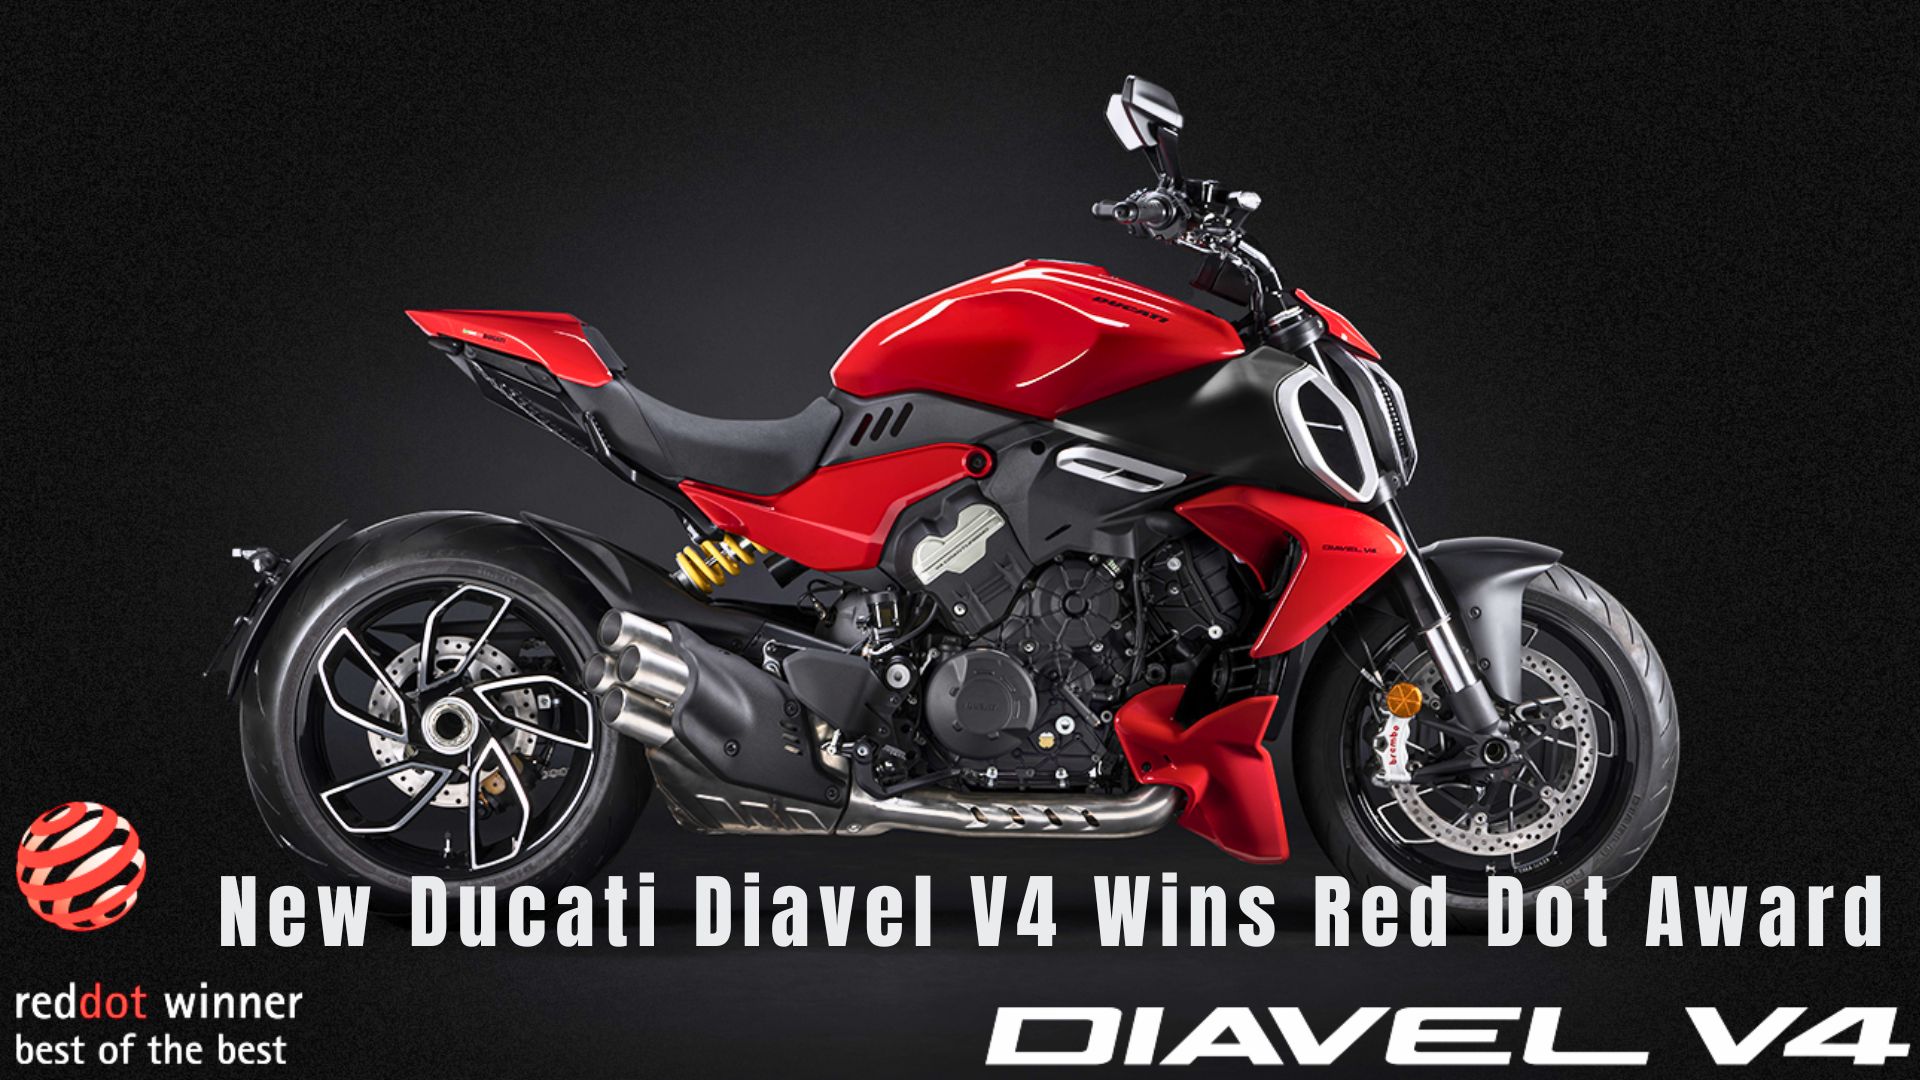 New Ducati Diavel V4